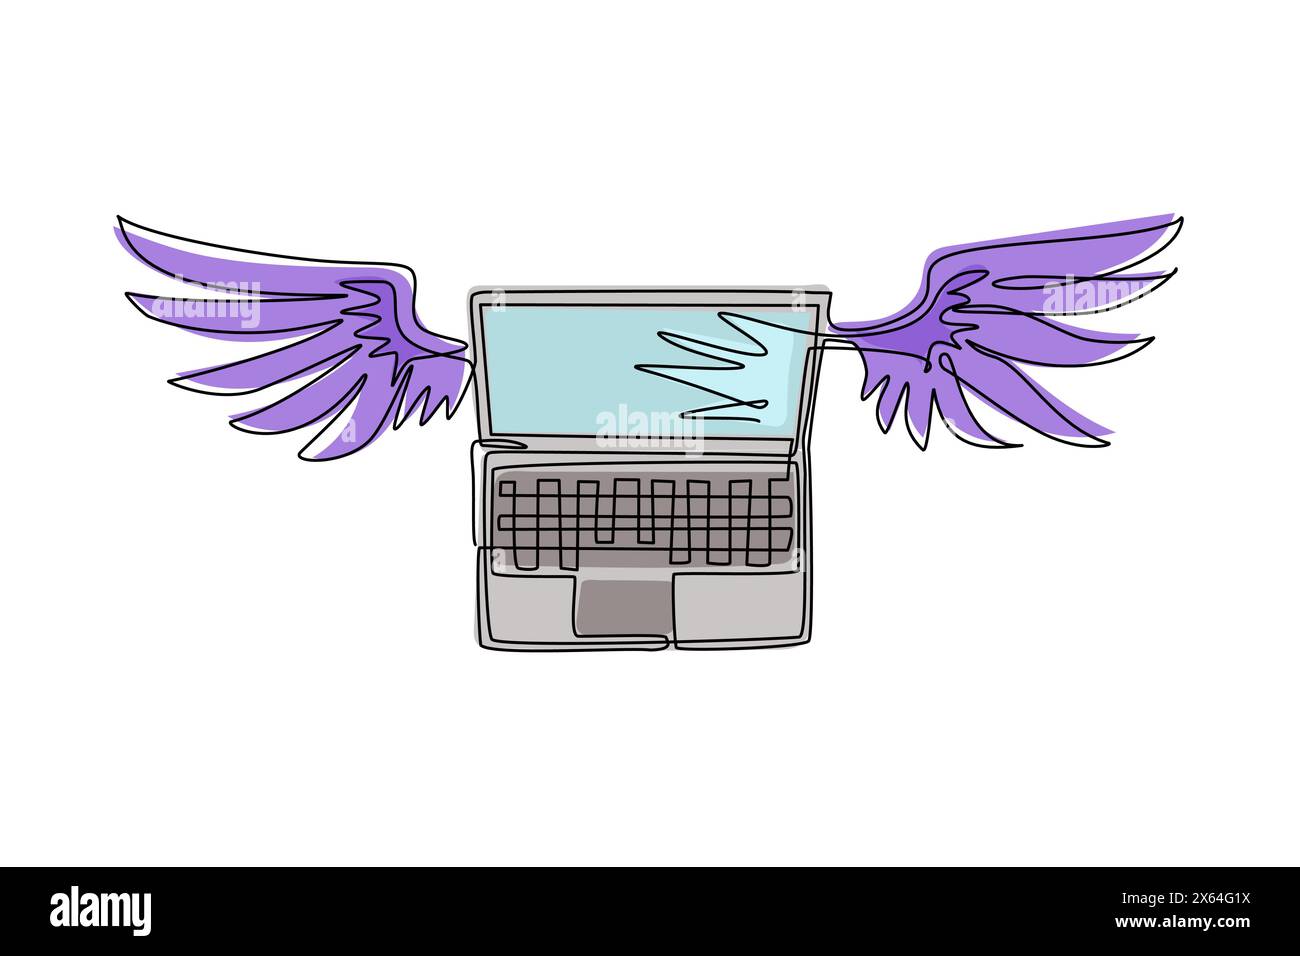 Durchgängiges, einzeiliges Notebook mit Flügeln, die in den Himmel fliegen. Cloud-Computing-Konzept. Laptops mit Flügeln, die in Richtung „Cloud“ fliegen. Einzel Stock Vektor